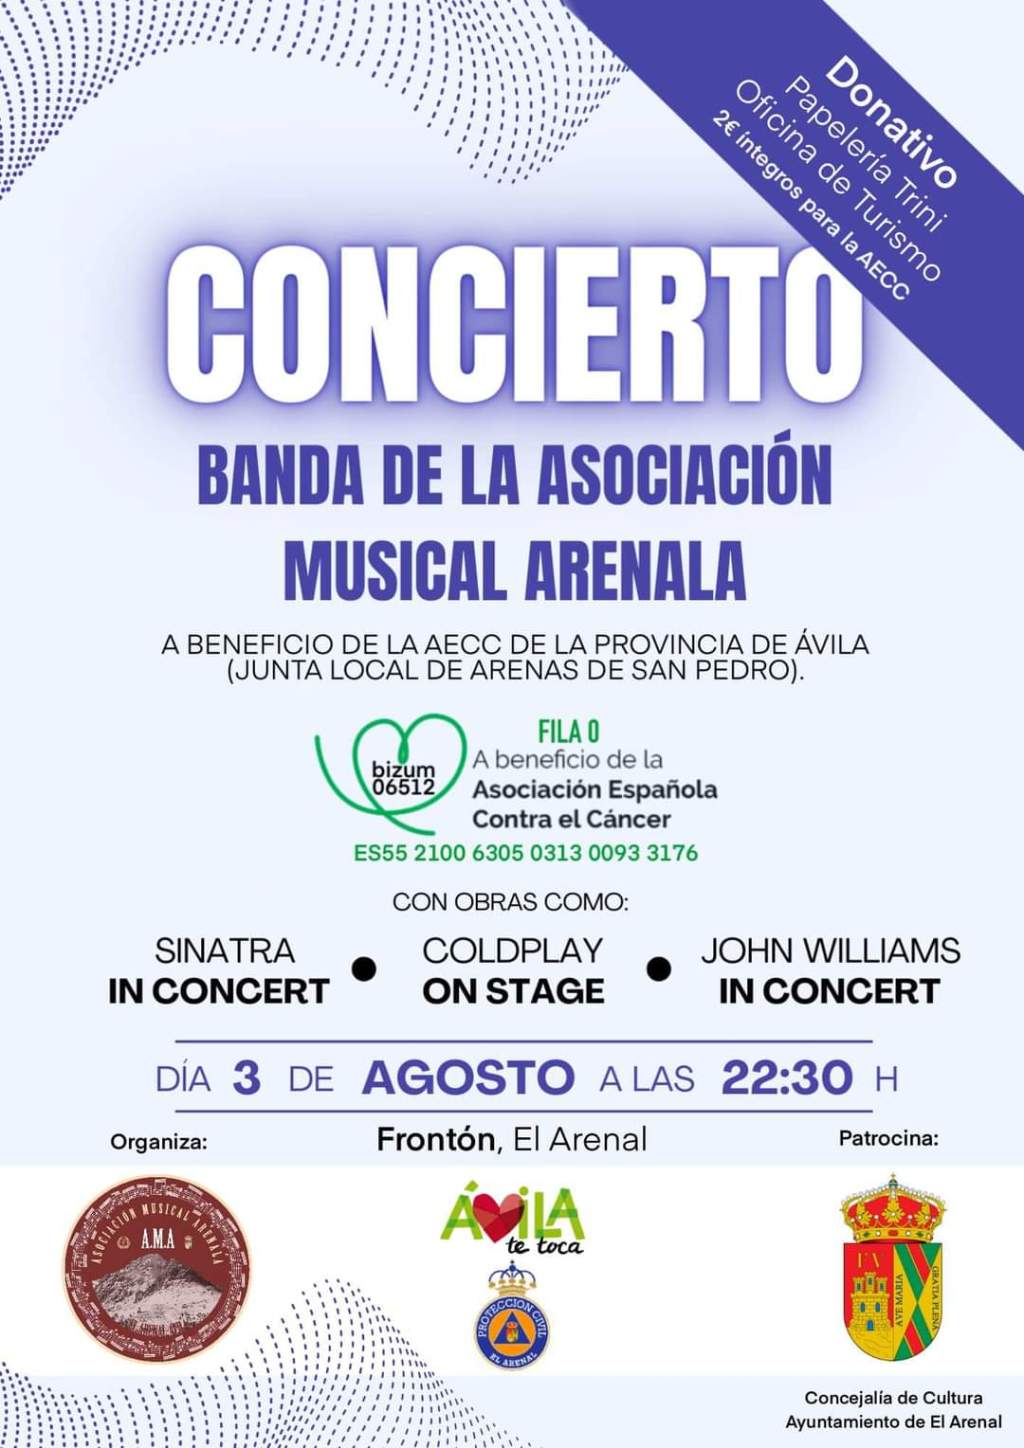 Concierto de la Banda de la Asociación Musical Arenala en El Arenal